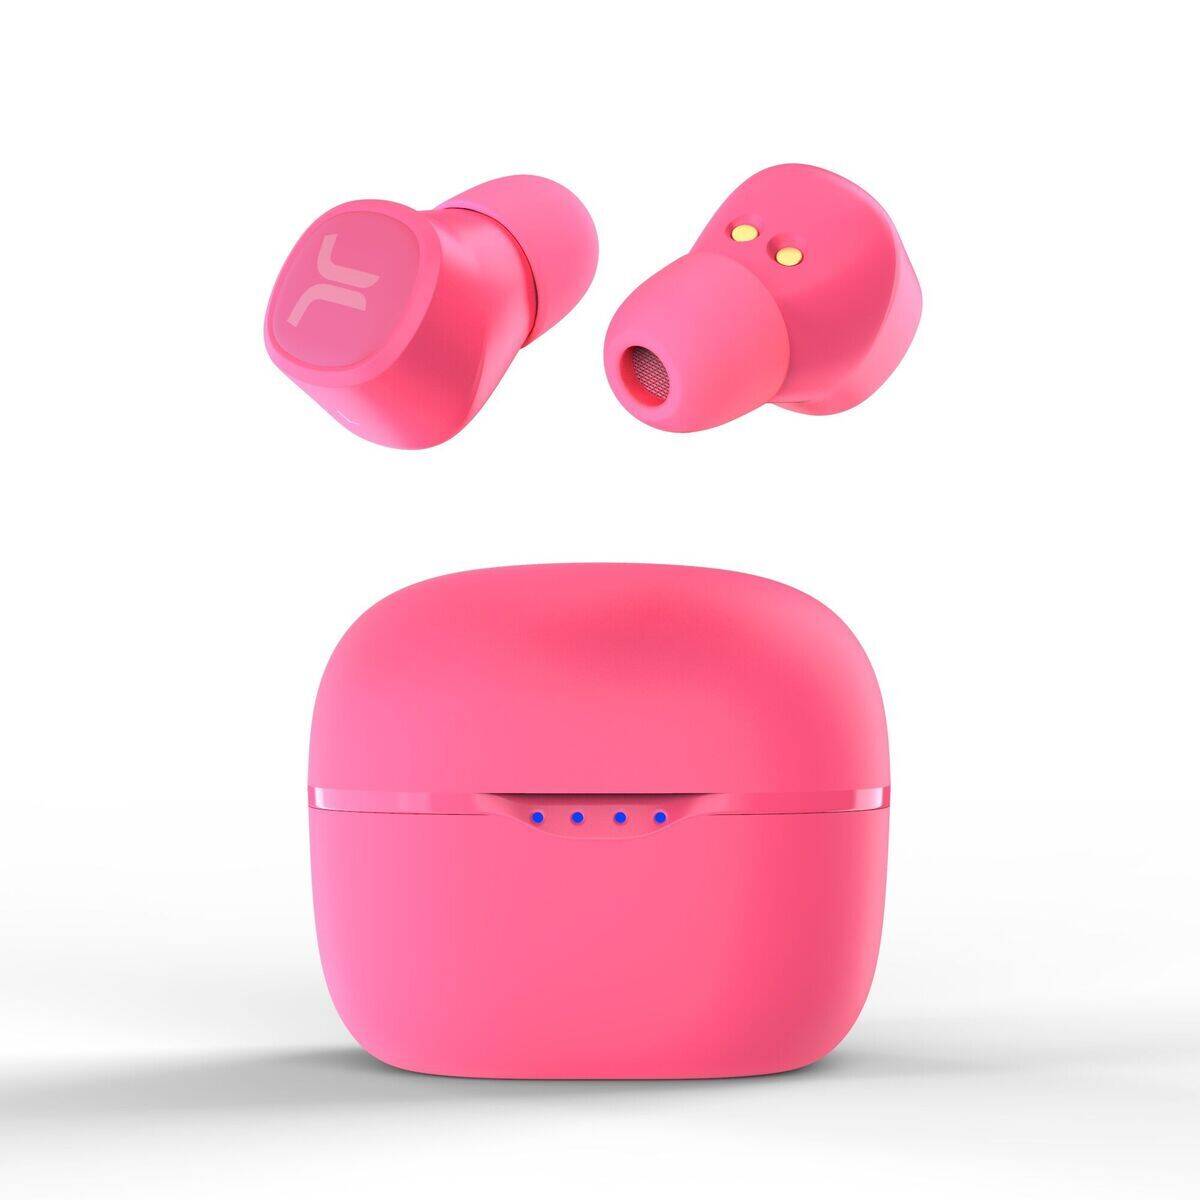 Erinnern an die AirPods, sind aber auch in Pink erhältlich: die WeSC-In-Ears.